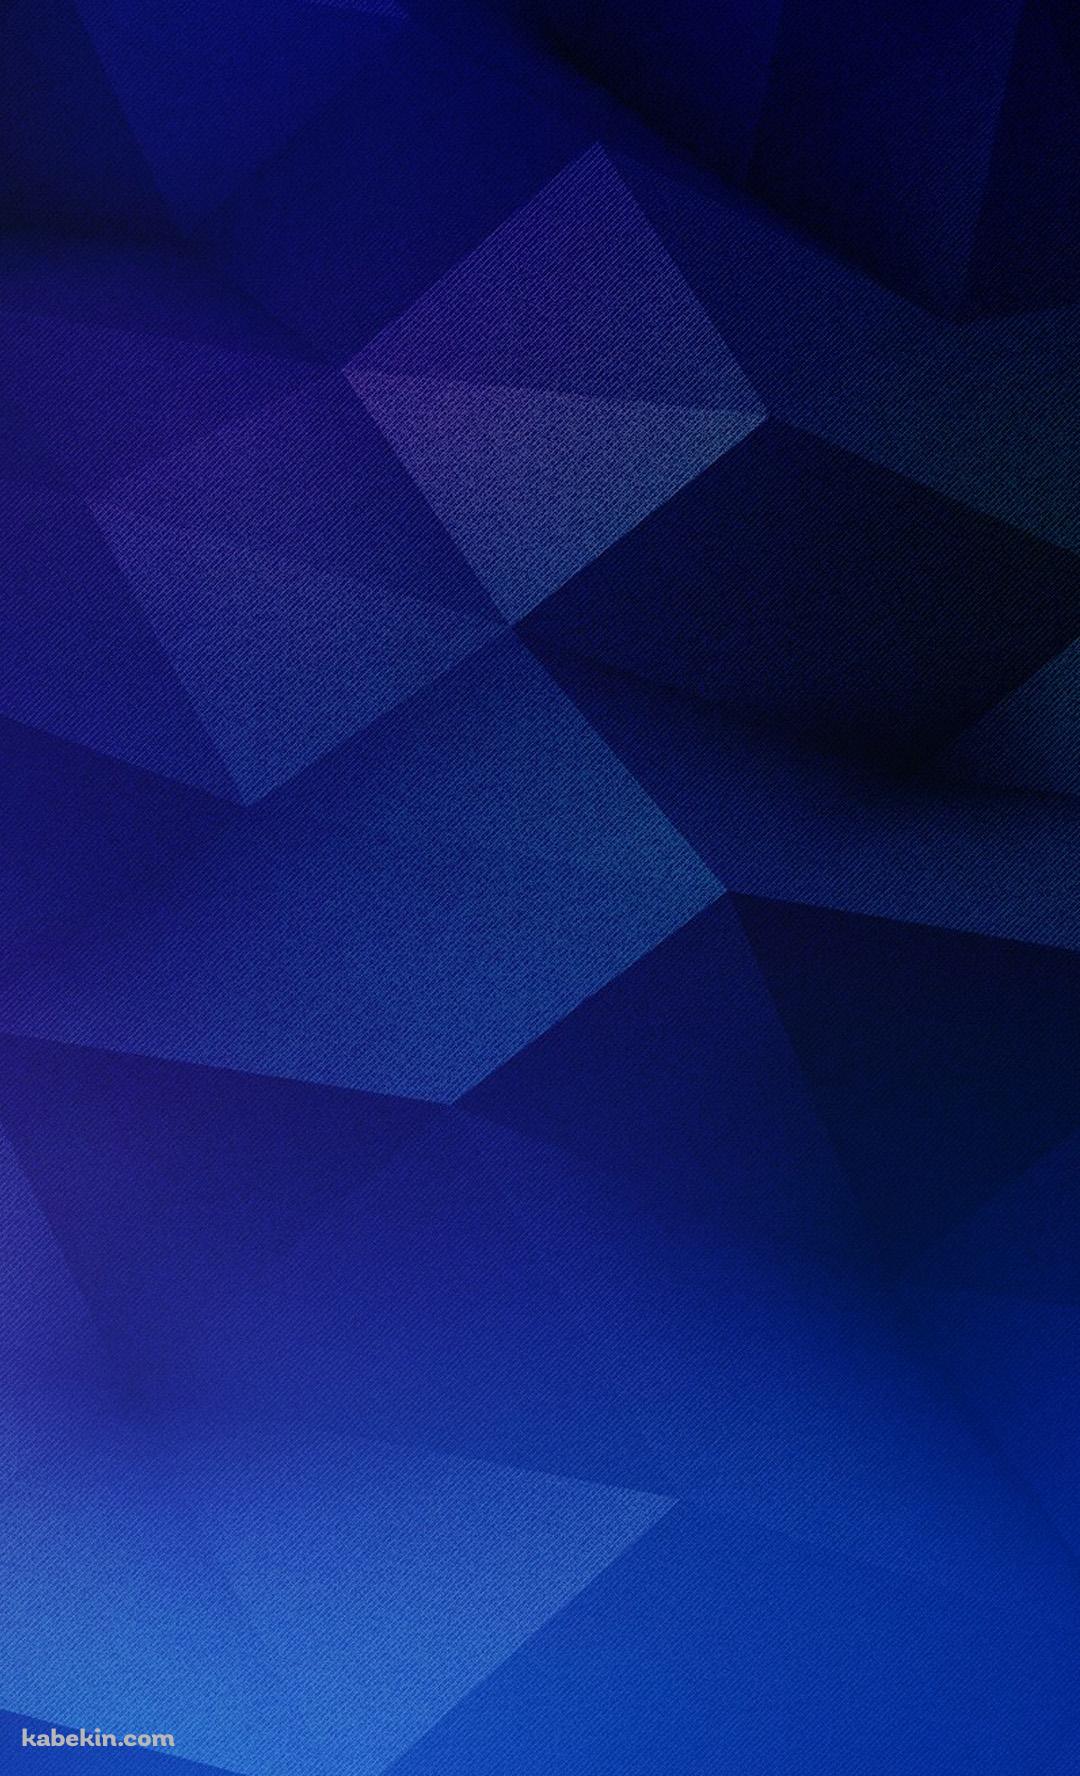 青のポリゴンのAndroidの壁紙(1080px x 1776px) スマホ用